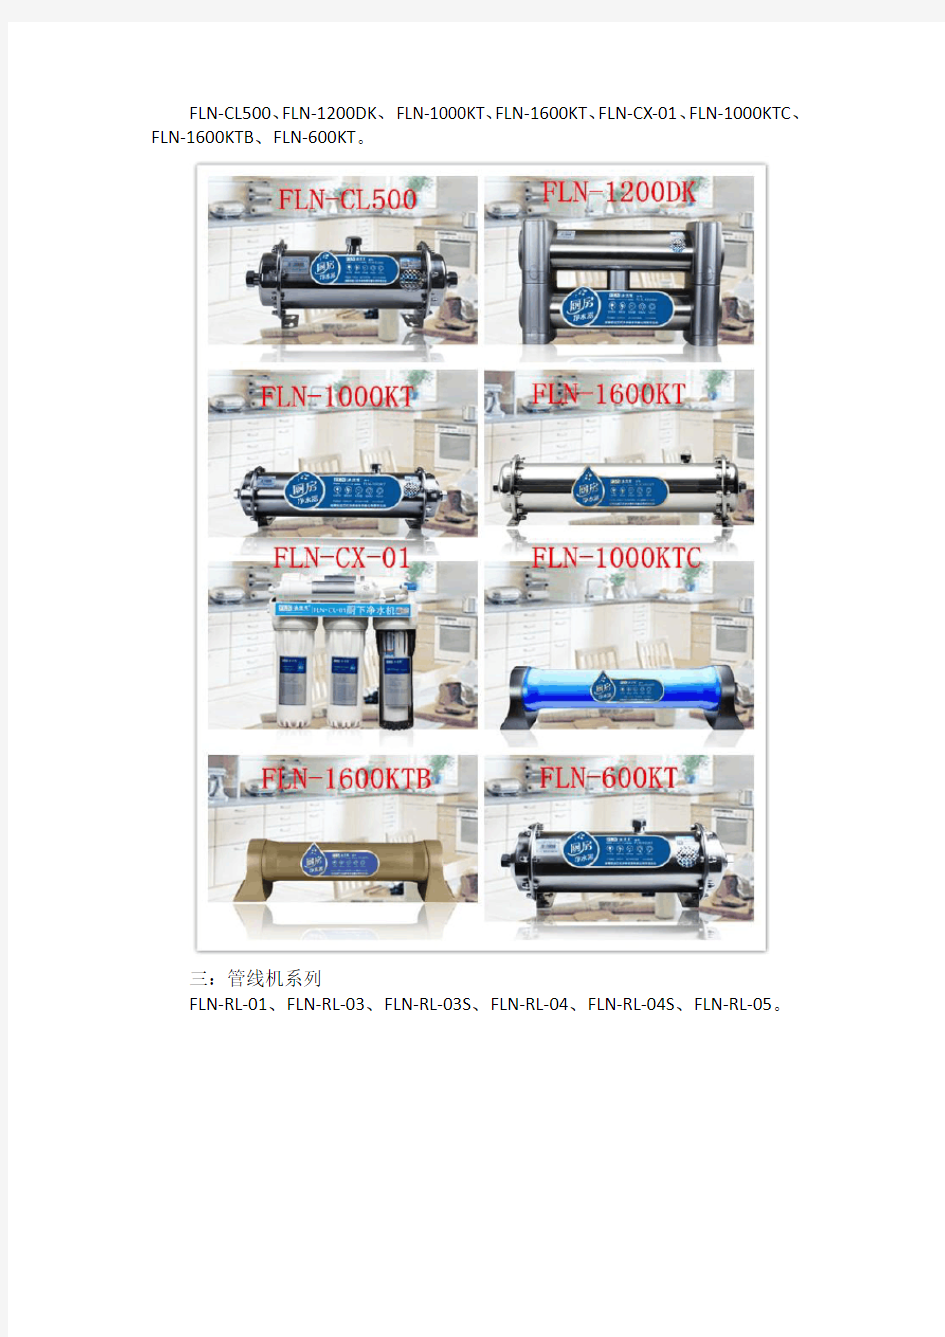 法兰尼净水器产品系列、型号、价格及图片详解